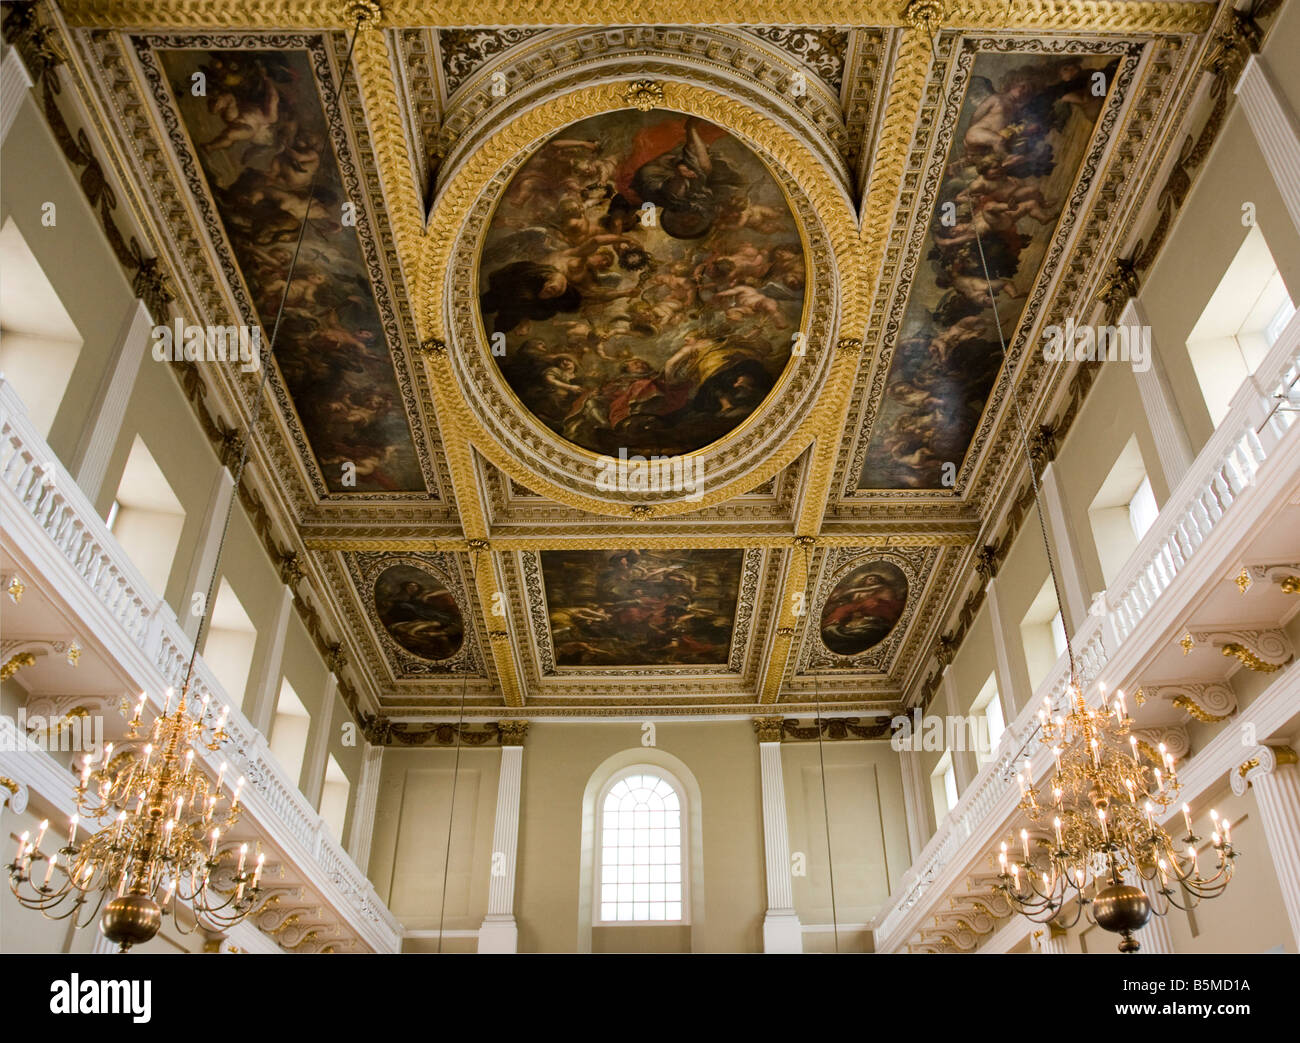 Il soffitto dipinto la Banqueting House di Whitehall Londra Inghilterra.Il solo superstite in situ di un soffitto dipinto di Peter Paul Rubens Foto Stock